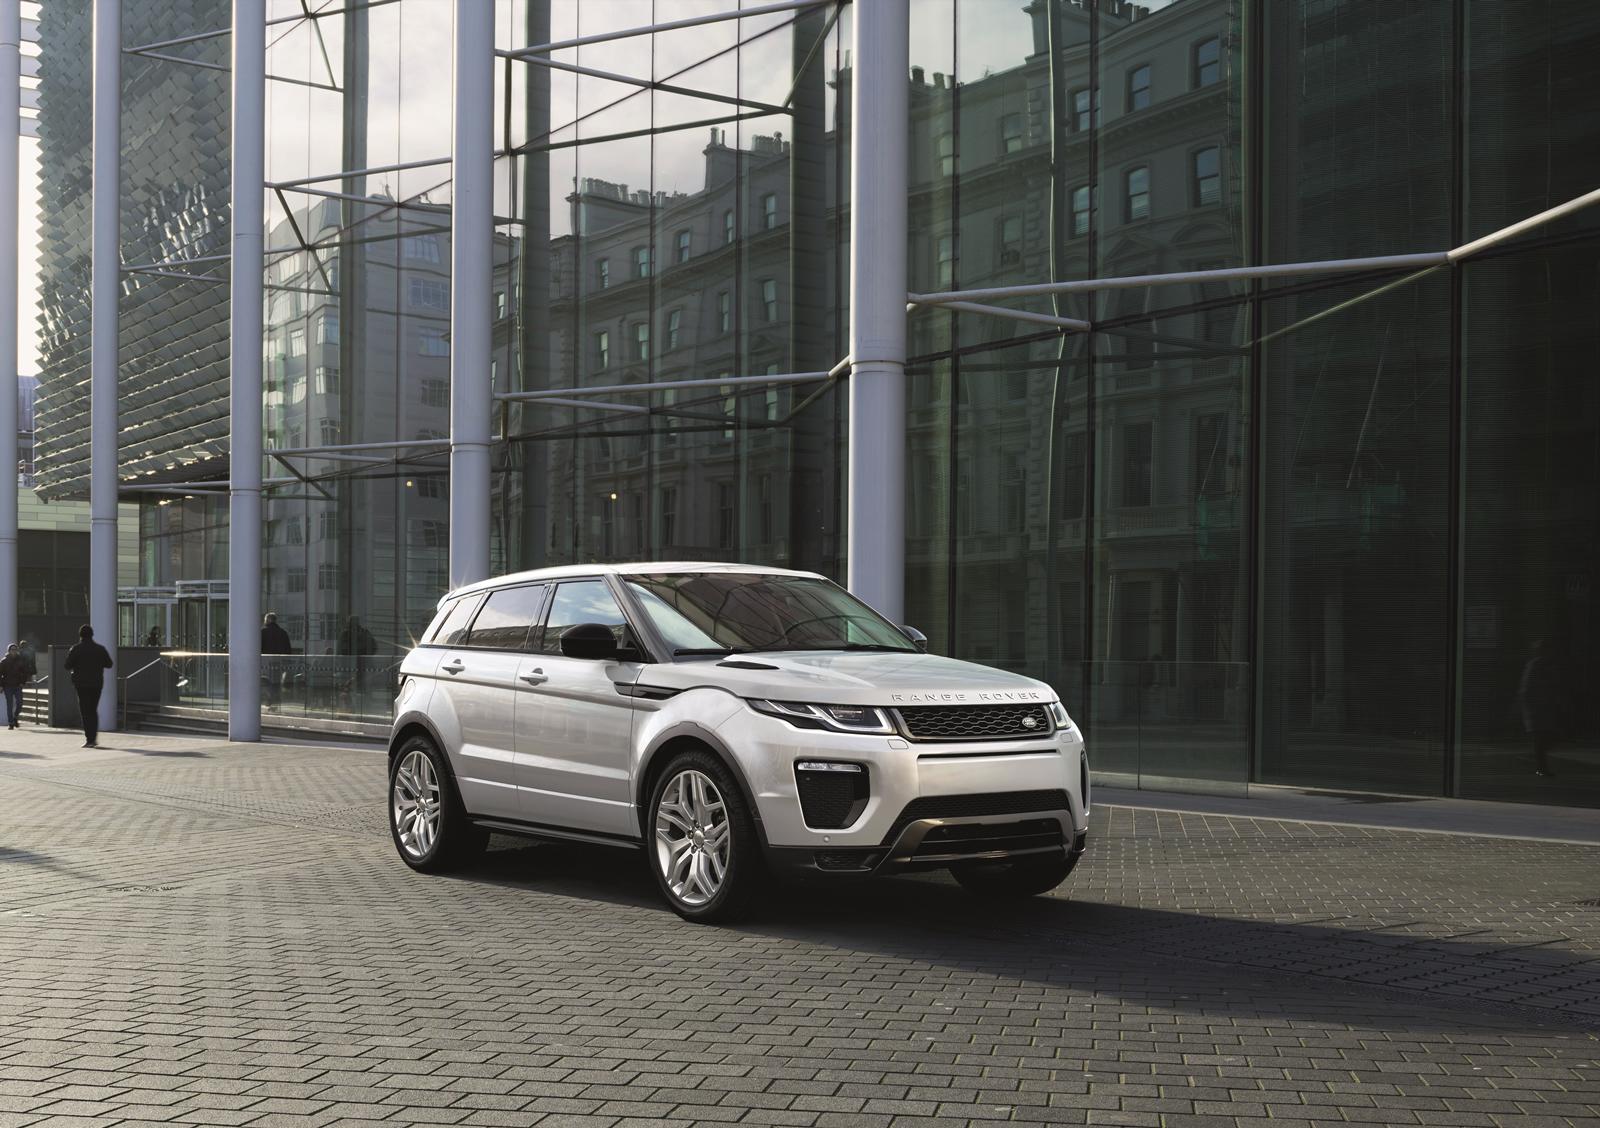 Range Rover Evoque 2015: motori e scheda tecnica